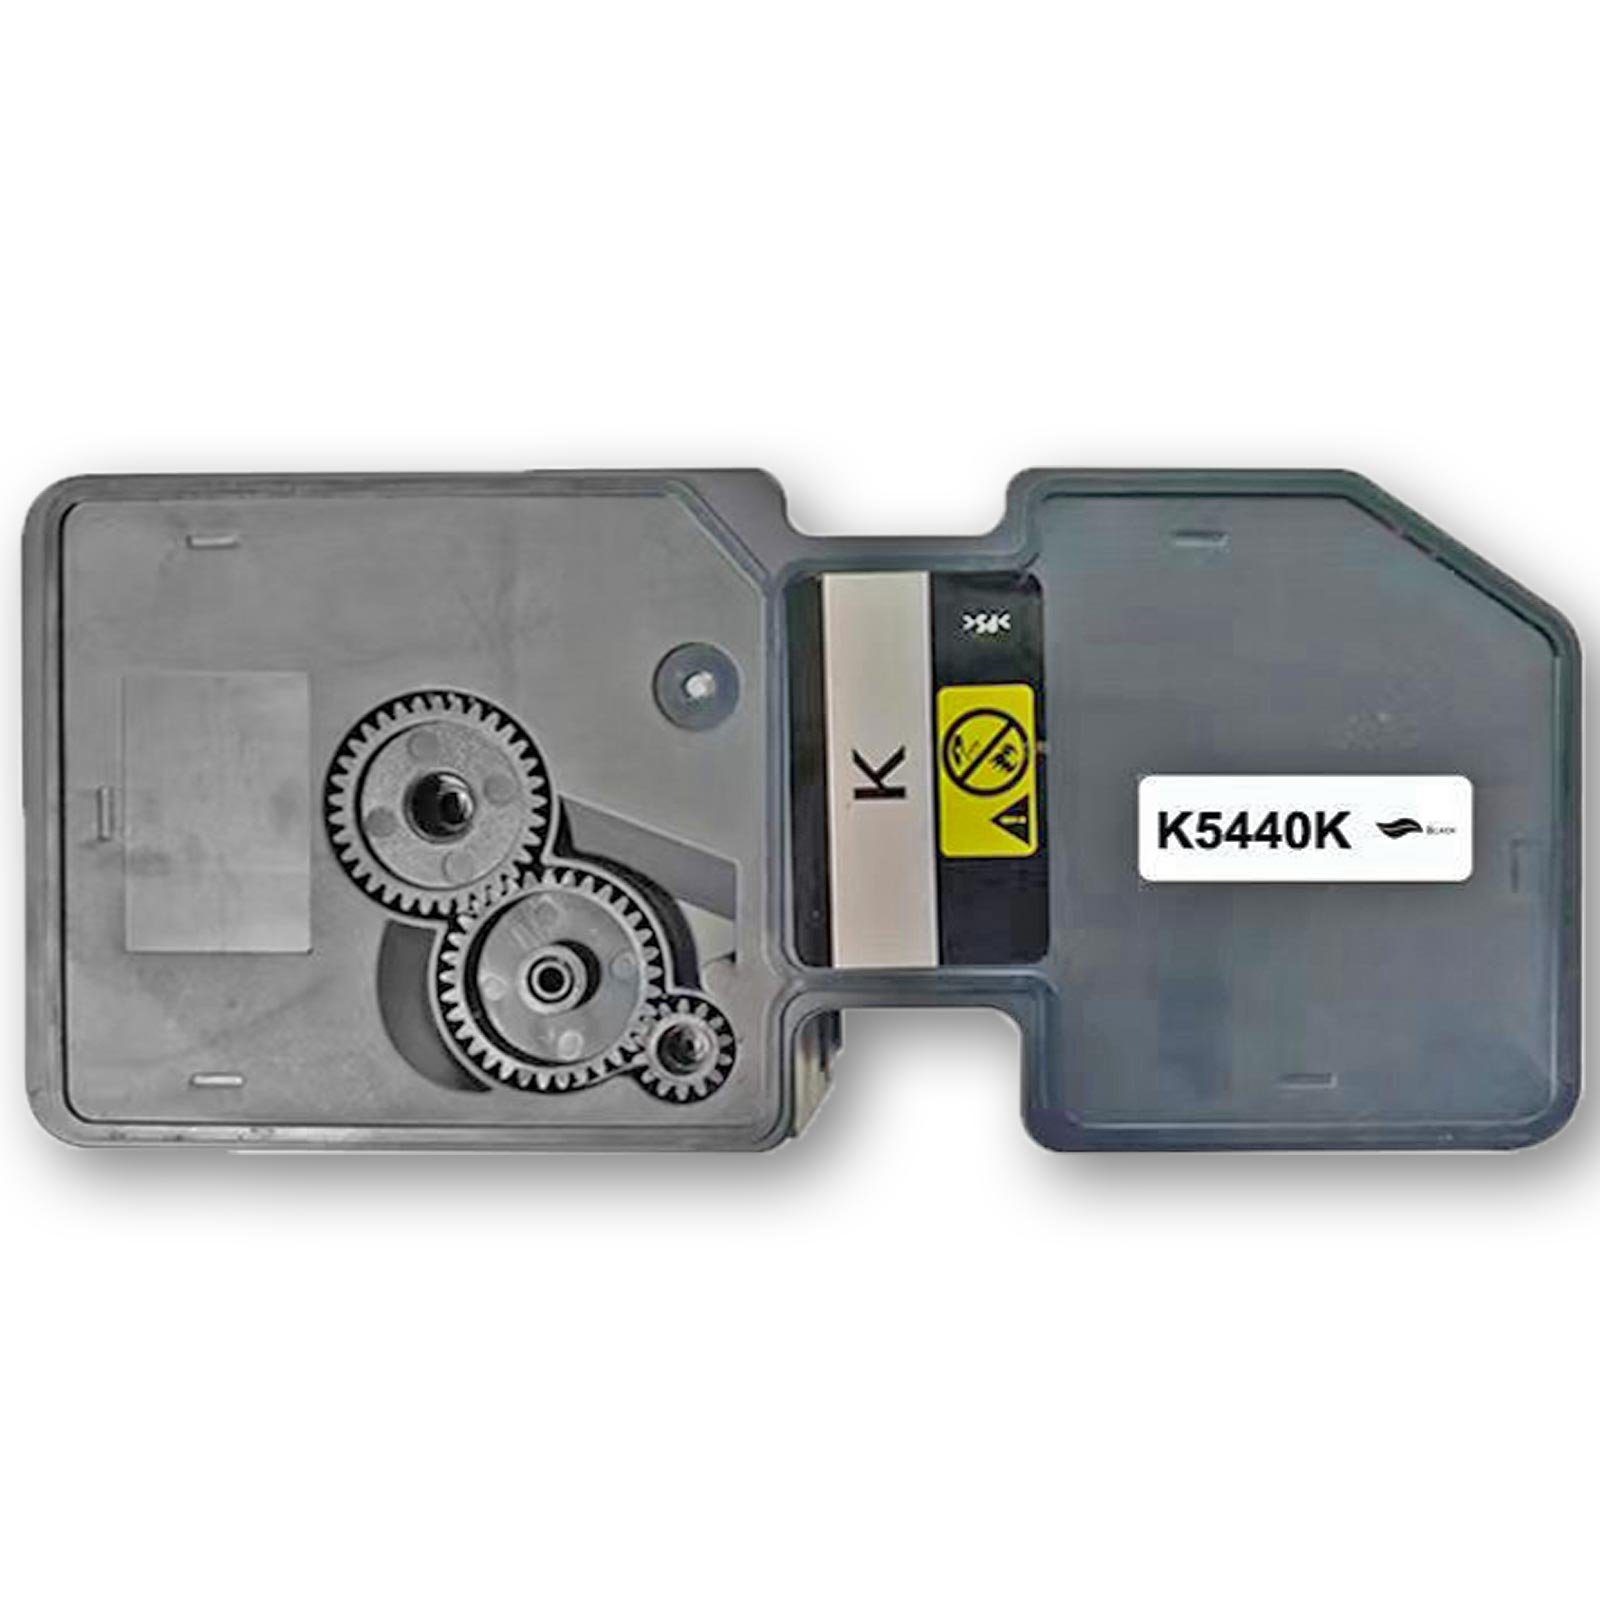 Gigao Tonerkartusche Kompatibel Kyocera Multipack Magenta (Schwarz, 4-Farben TK-5440 Cyan